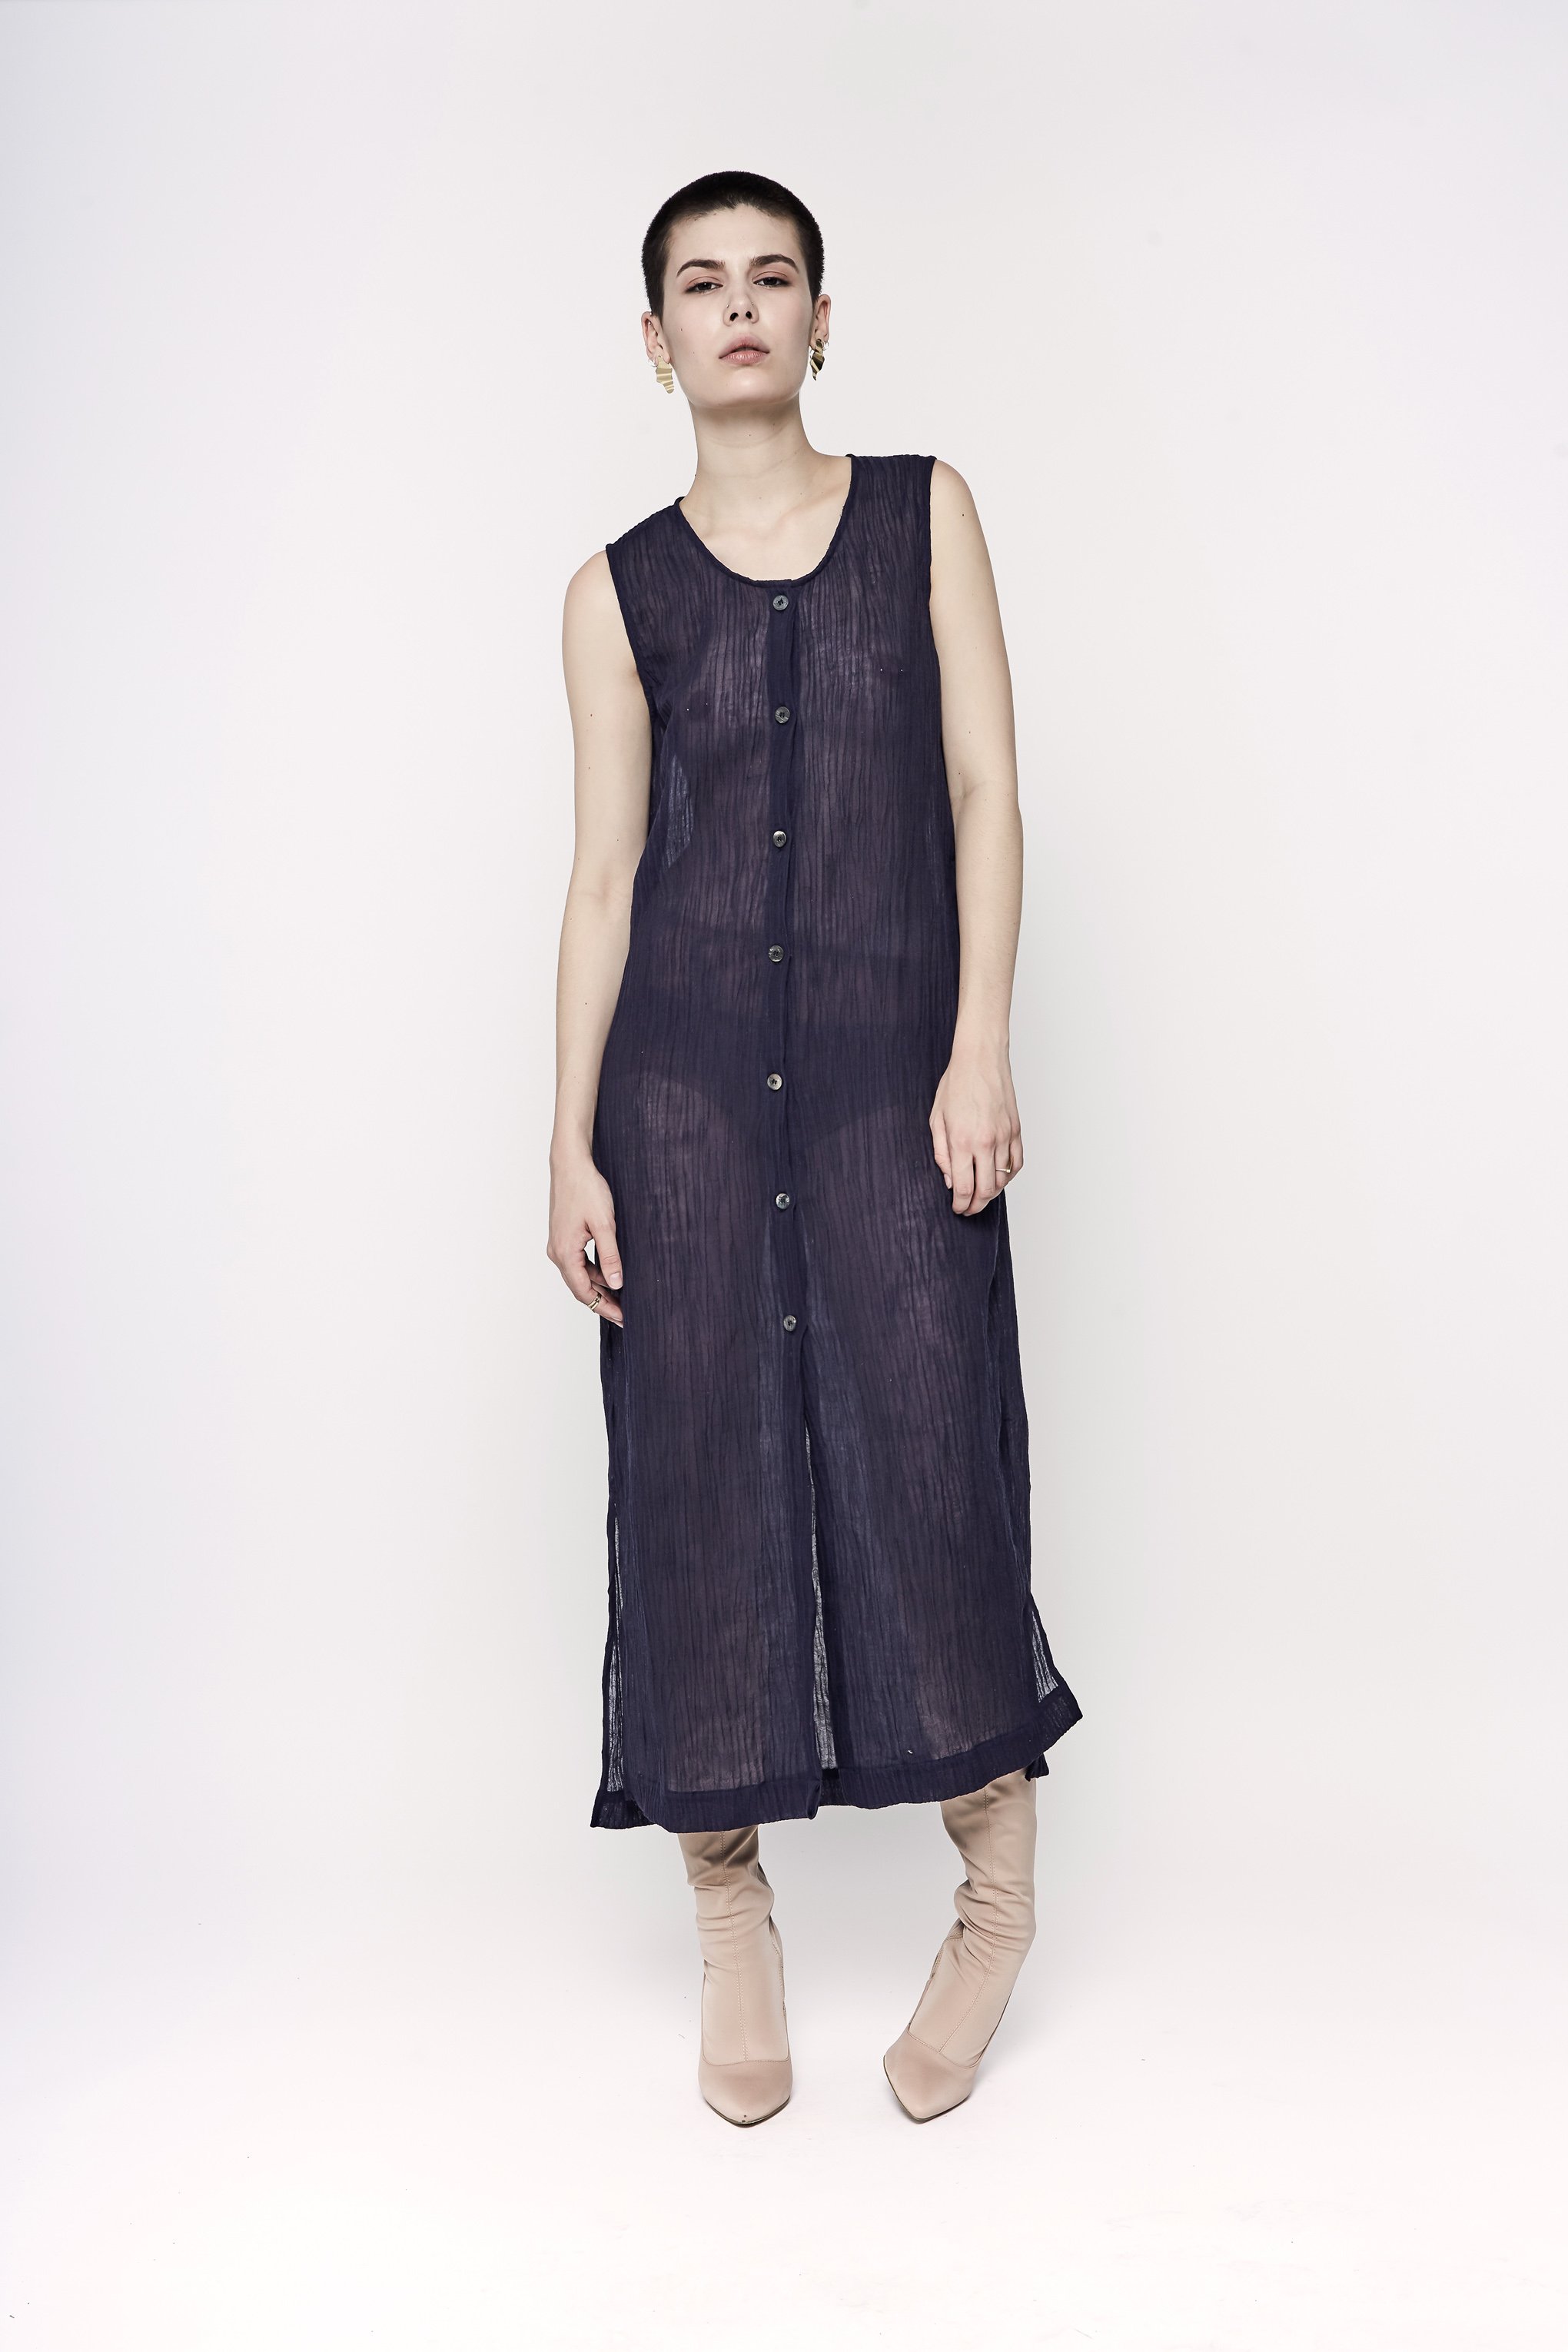 JASON LINGARD Forgotten Linen Dress - Designers-Jason Lingard : High St ...